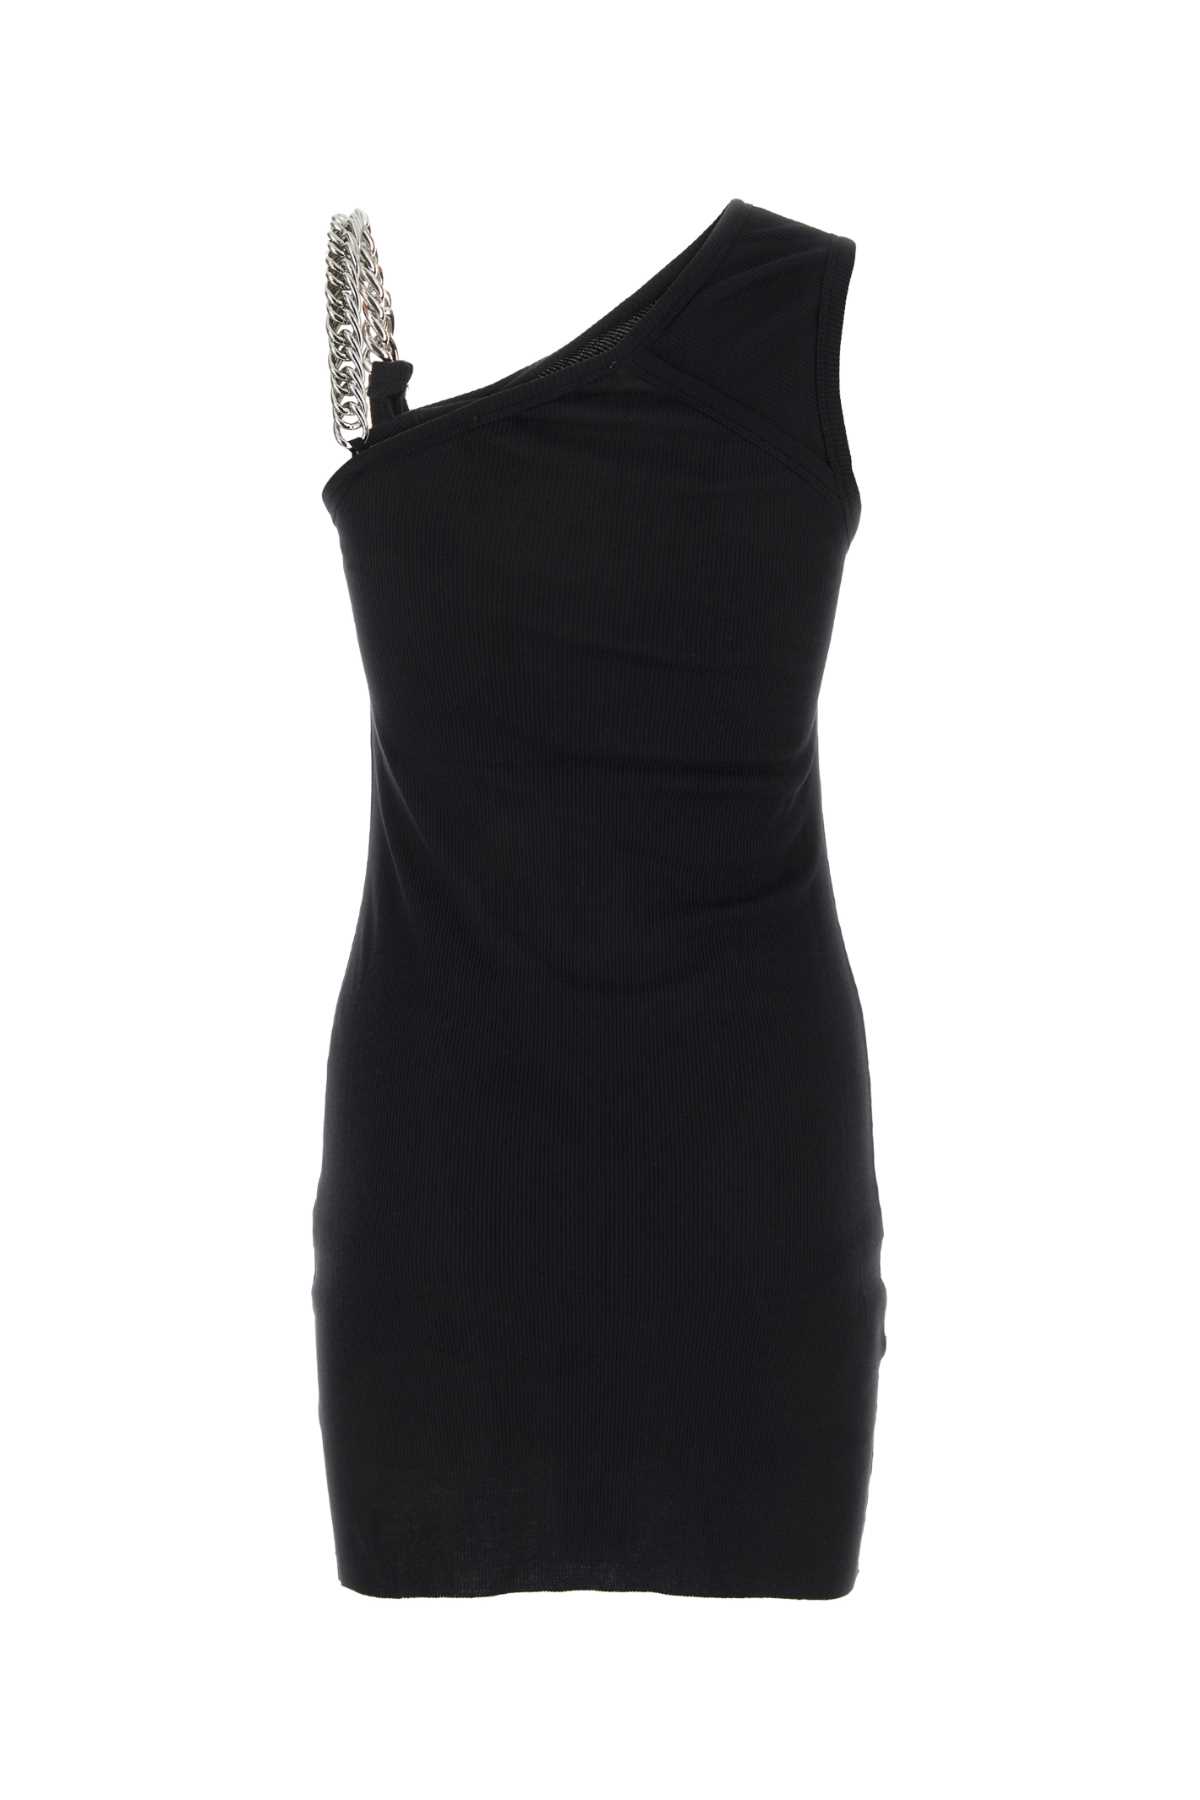 Alyx Black Cotton Mini Dress In Blk0001